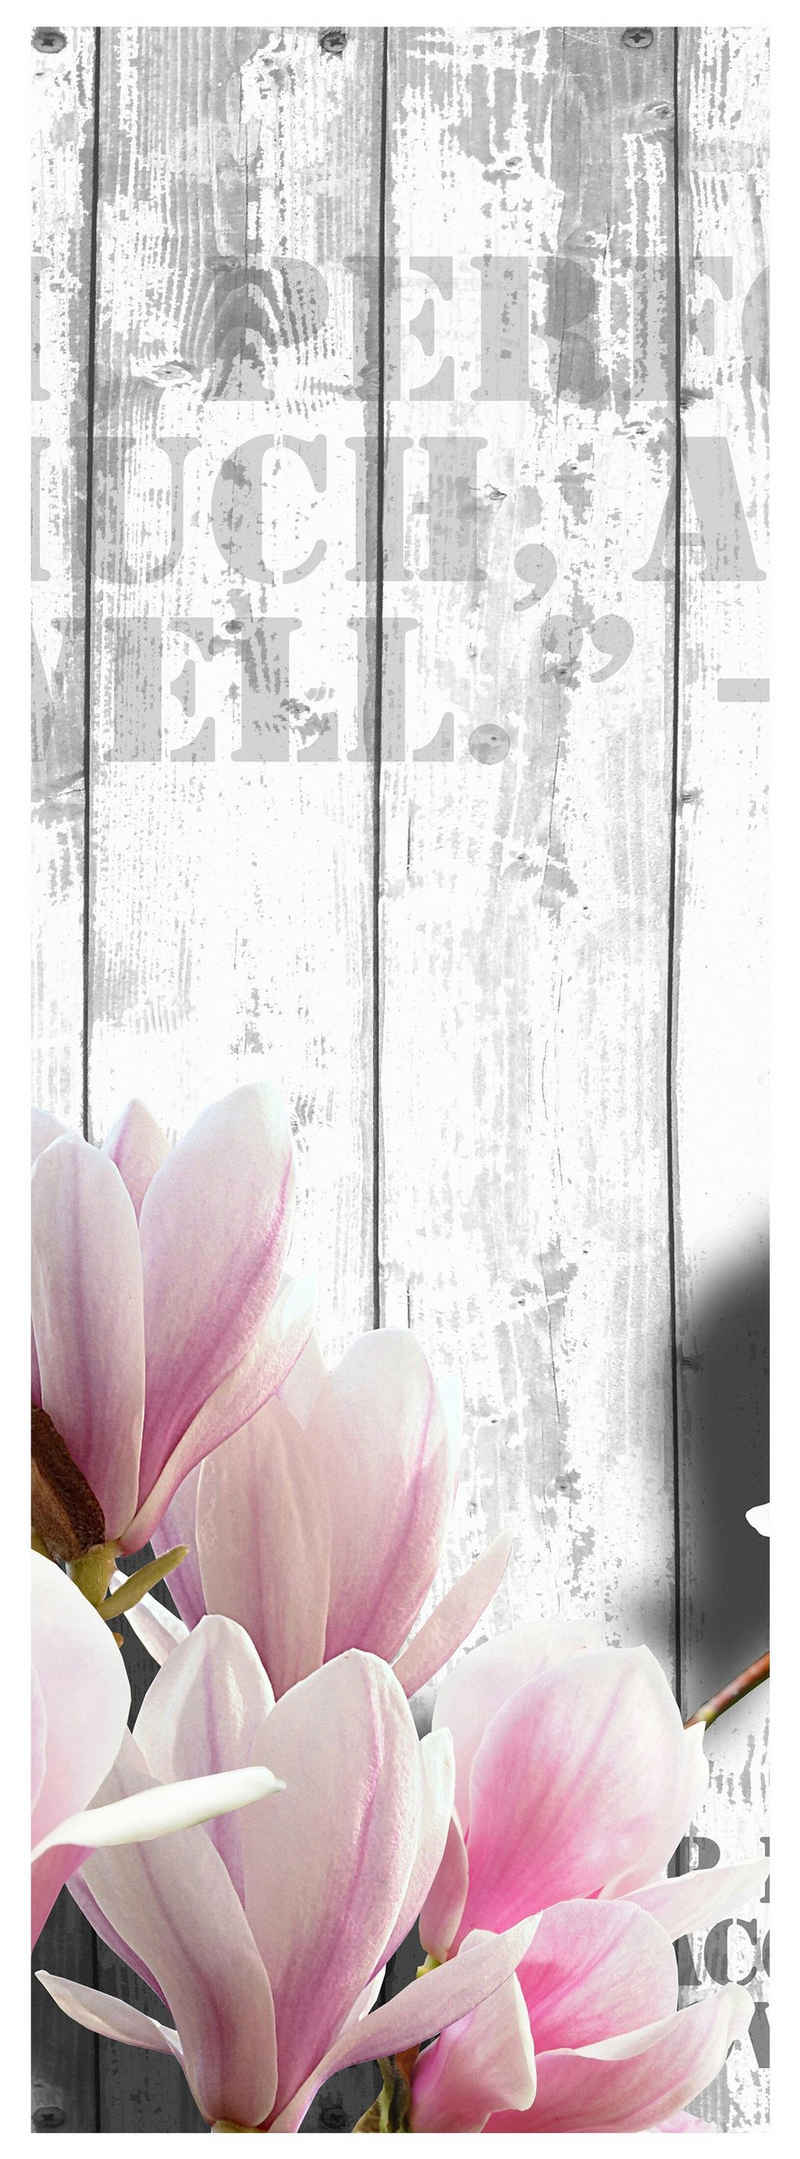 wandmotiv24 Türtapete Holz rosa Blüten, glatt, Fototapete, Wandtapete, Motivtapete, matt, selbstklebende Dekorfolie